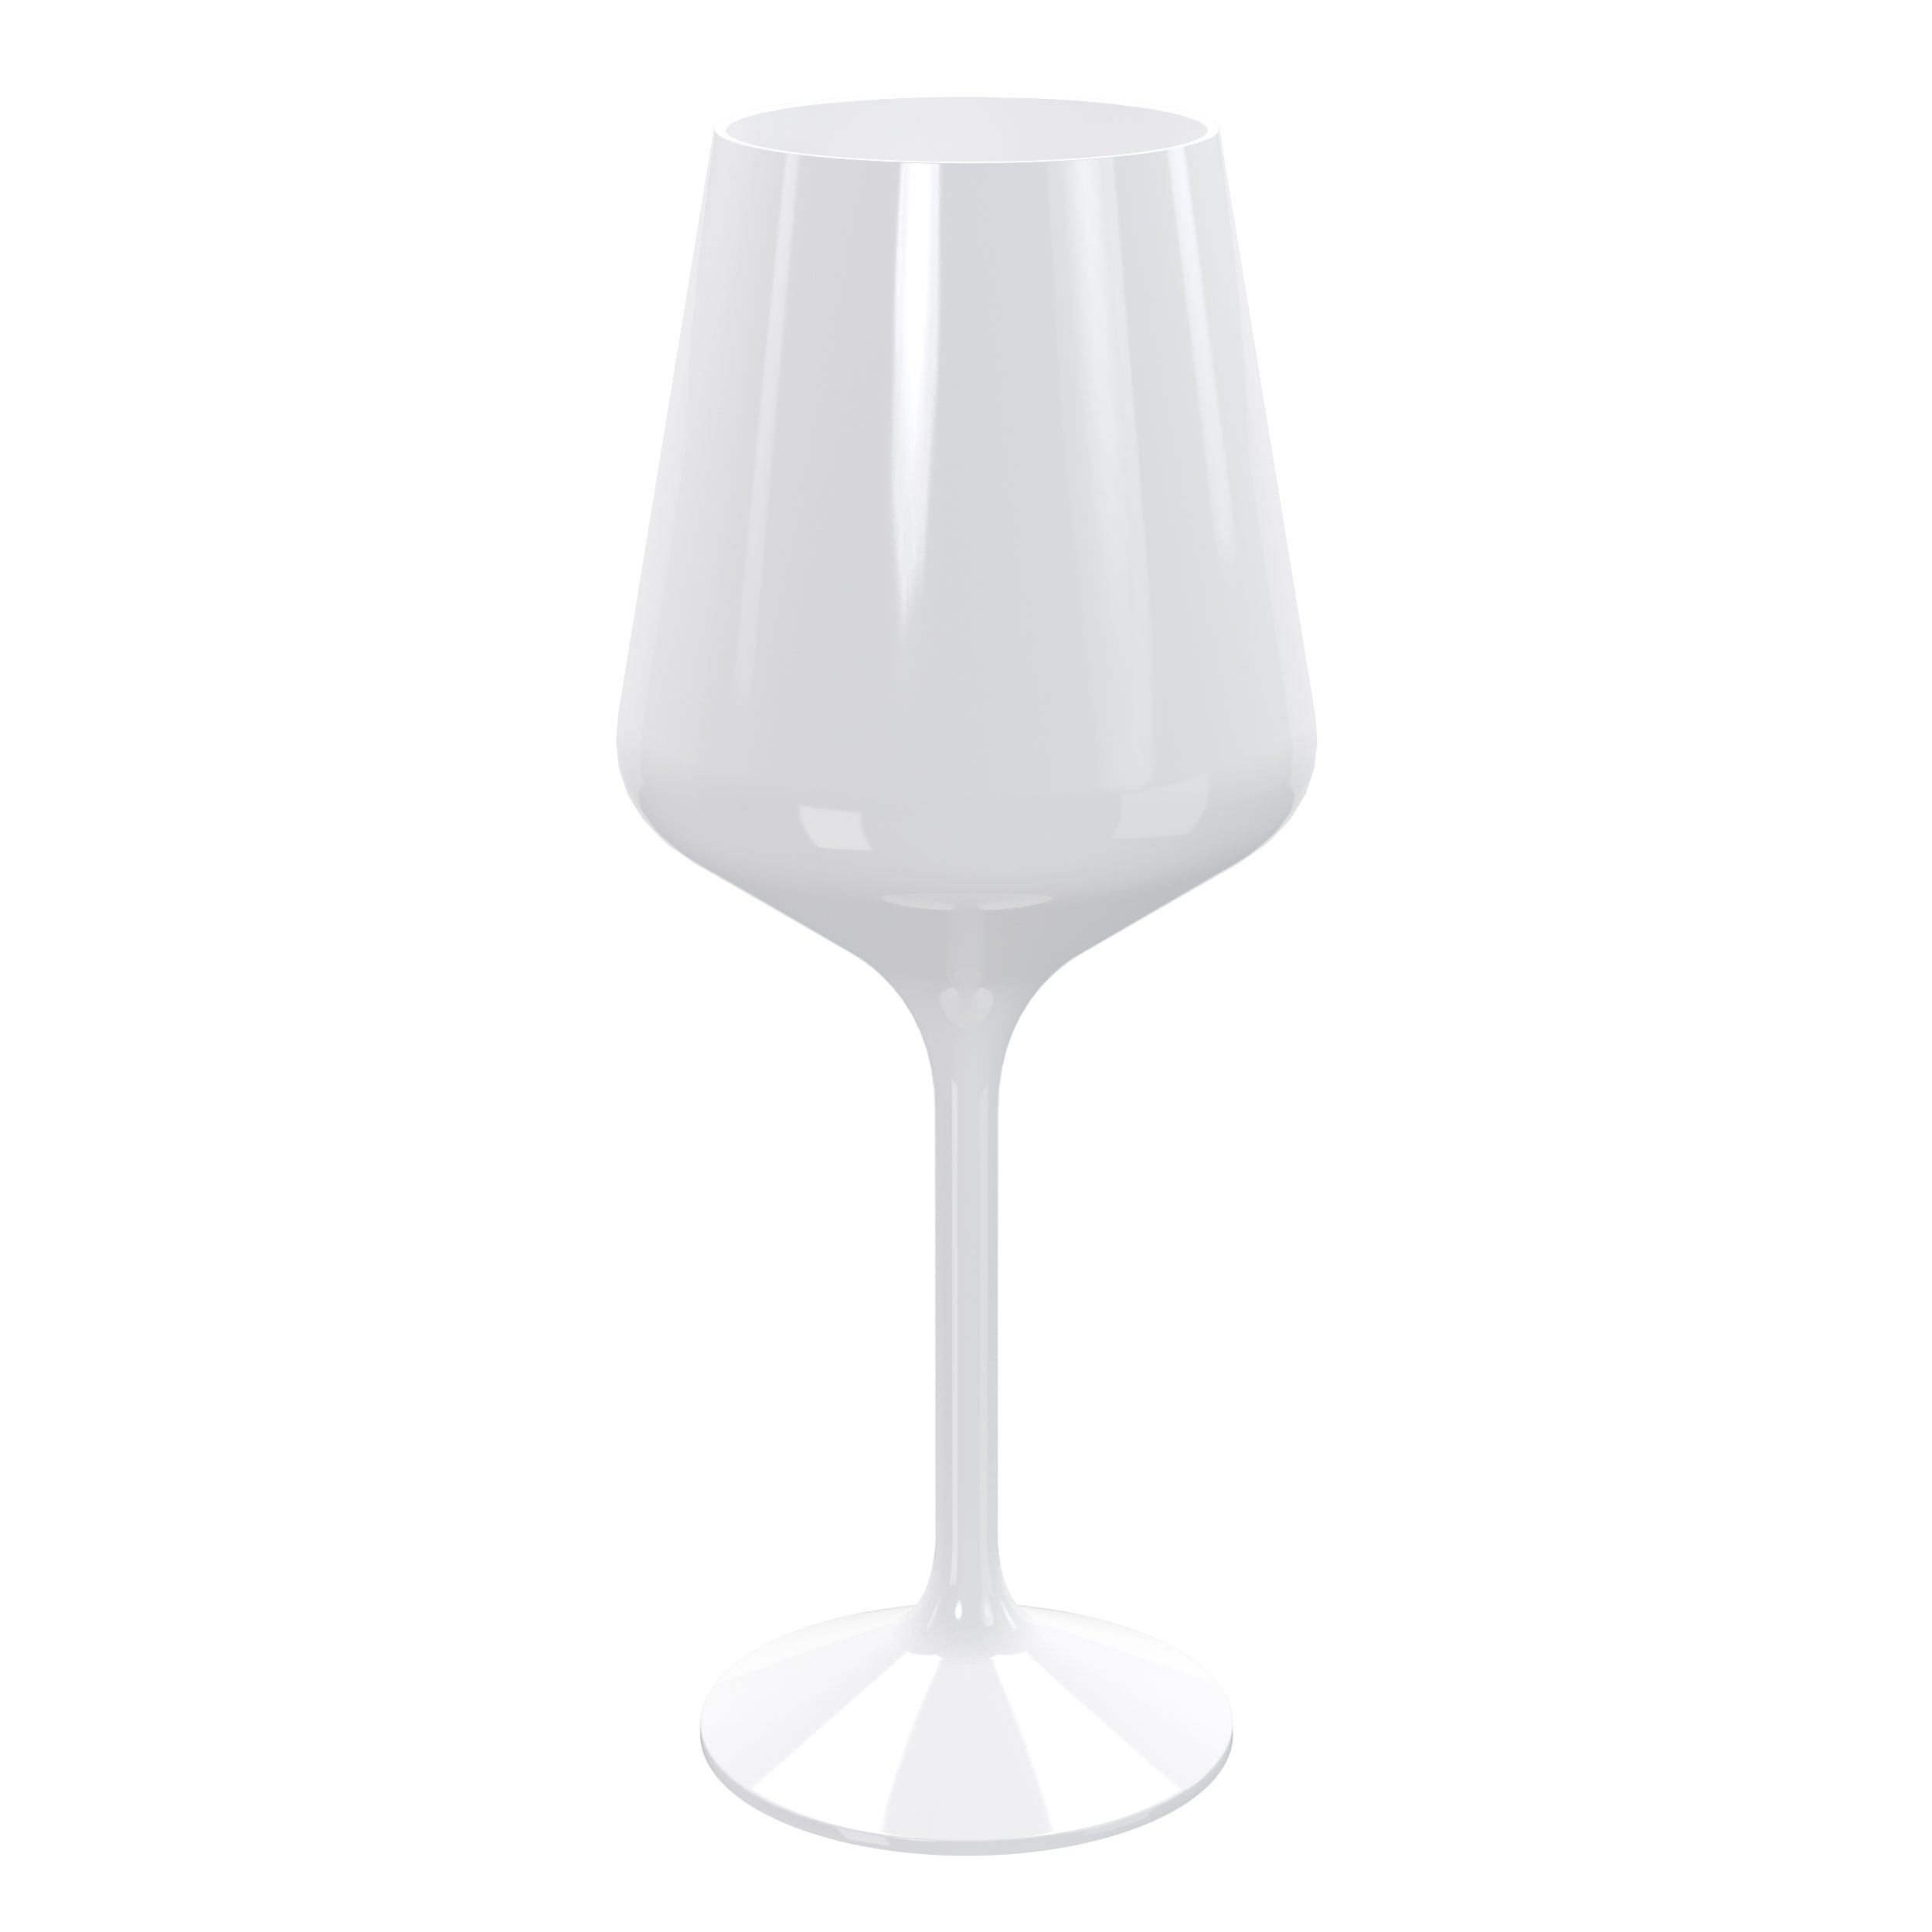 Reusable 16 Oz. White Stemmed Wine Glasses | 12 Count